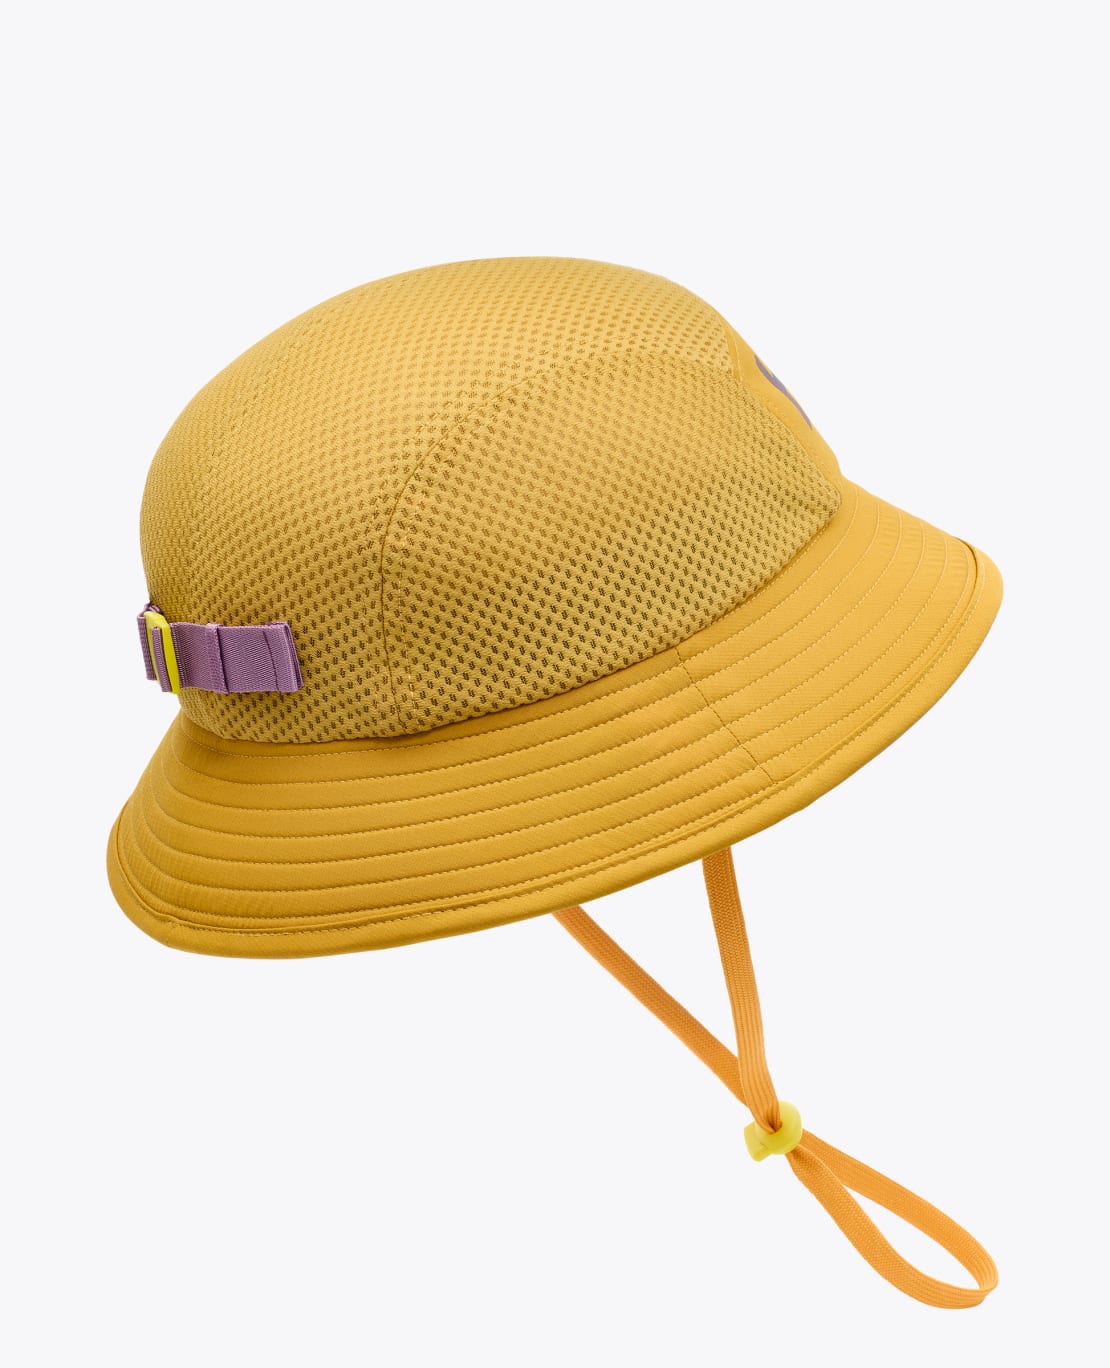 HOKA Adventure Hat